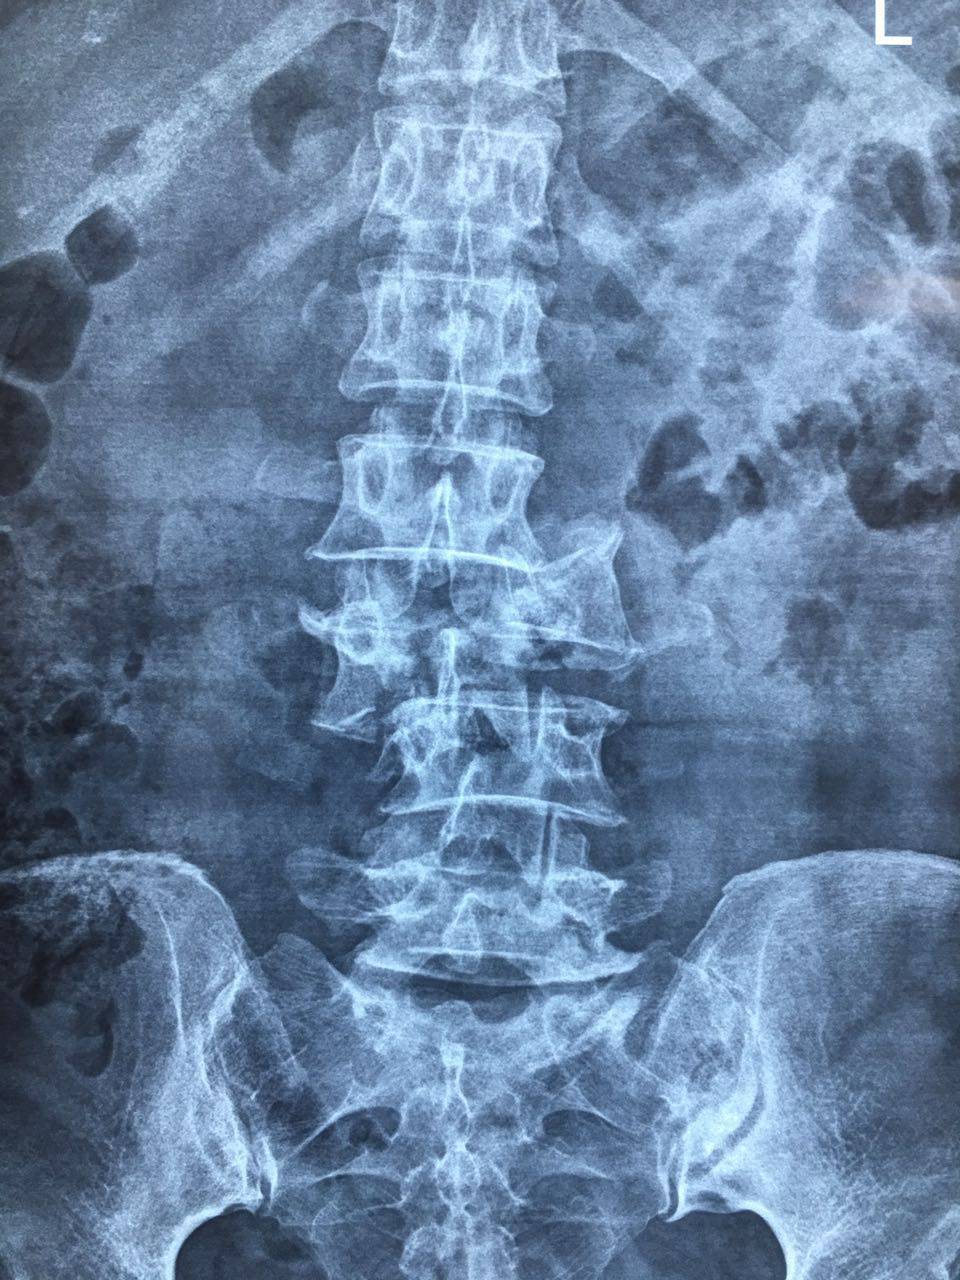 发现患者腰3椎体爆裂性骨折伴脱位,脊髓损伤,腰2,3,4椎体横突骨折